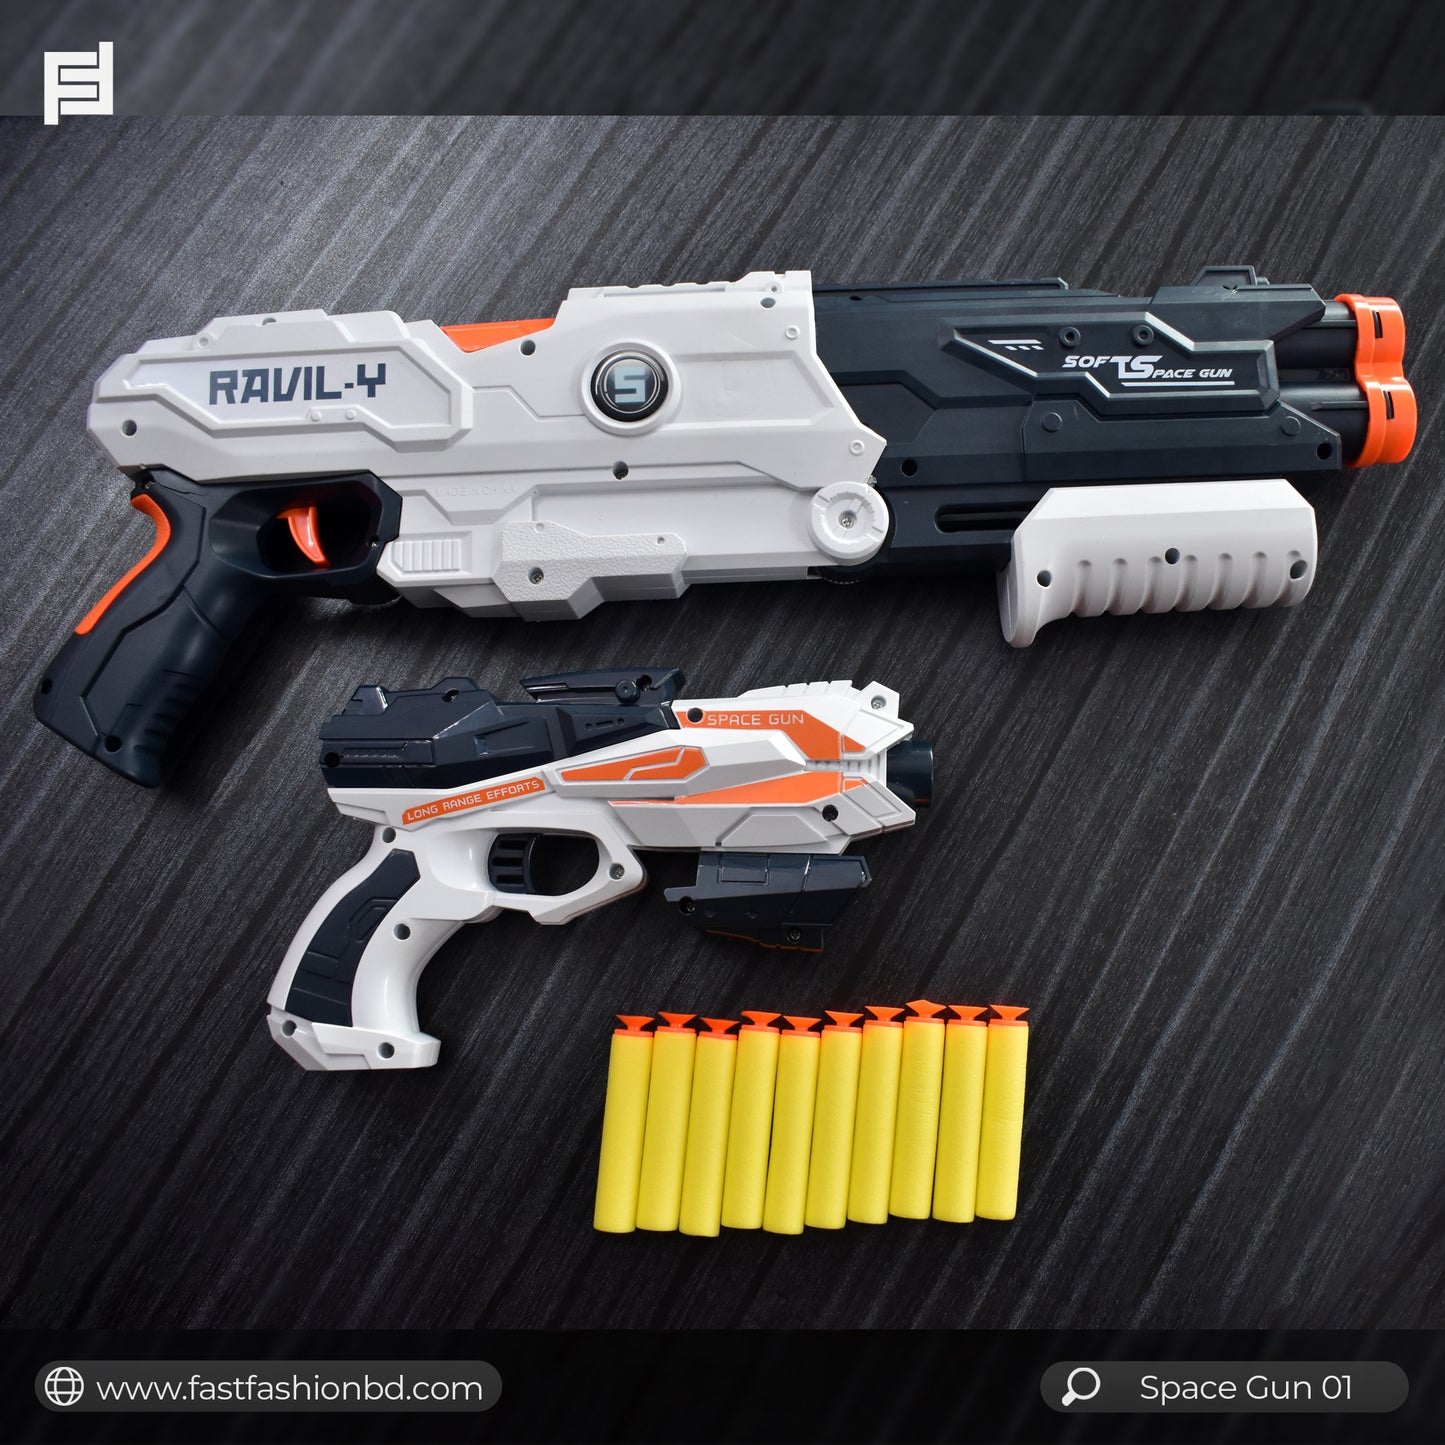 Space Gun Ravil-Y for Kids - Space Gun 01